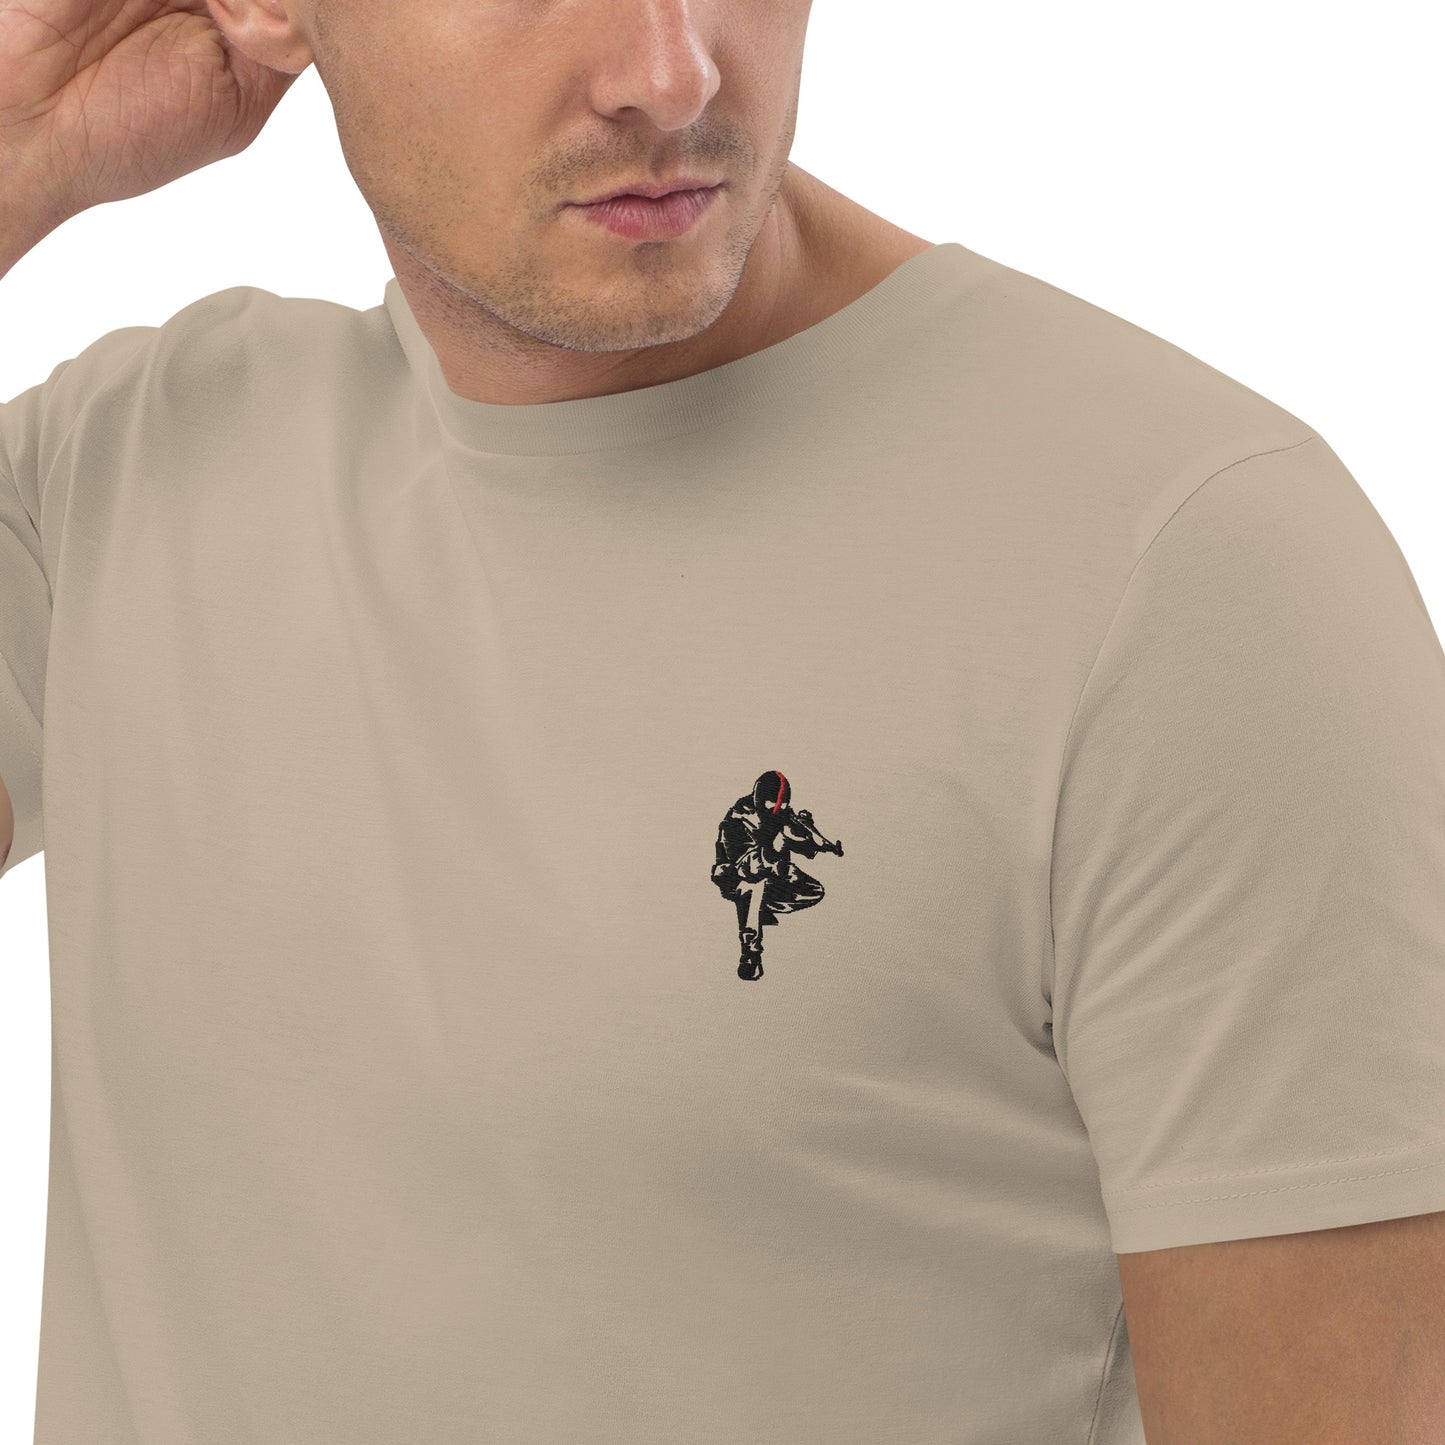 T-shirt unisexe en coton bio Ribellu - Ochju Ochju Desert Dust / S Ochju T-shirt unisexe en coton bio Ribellu